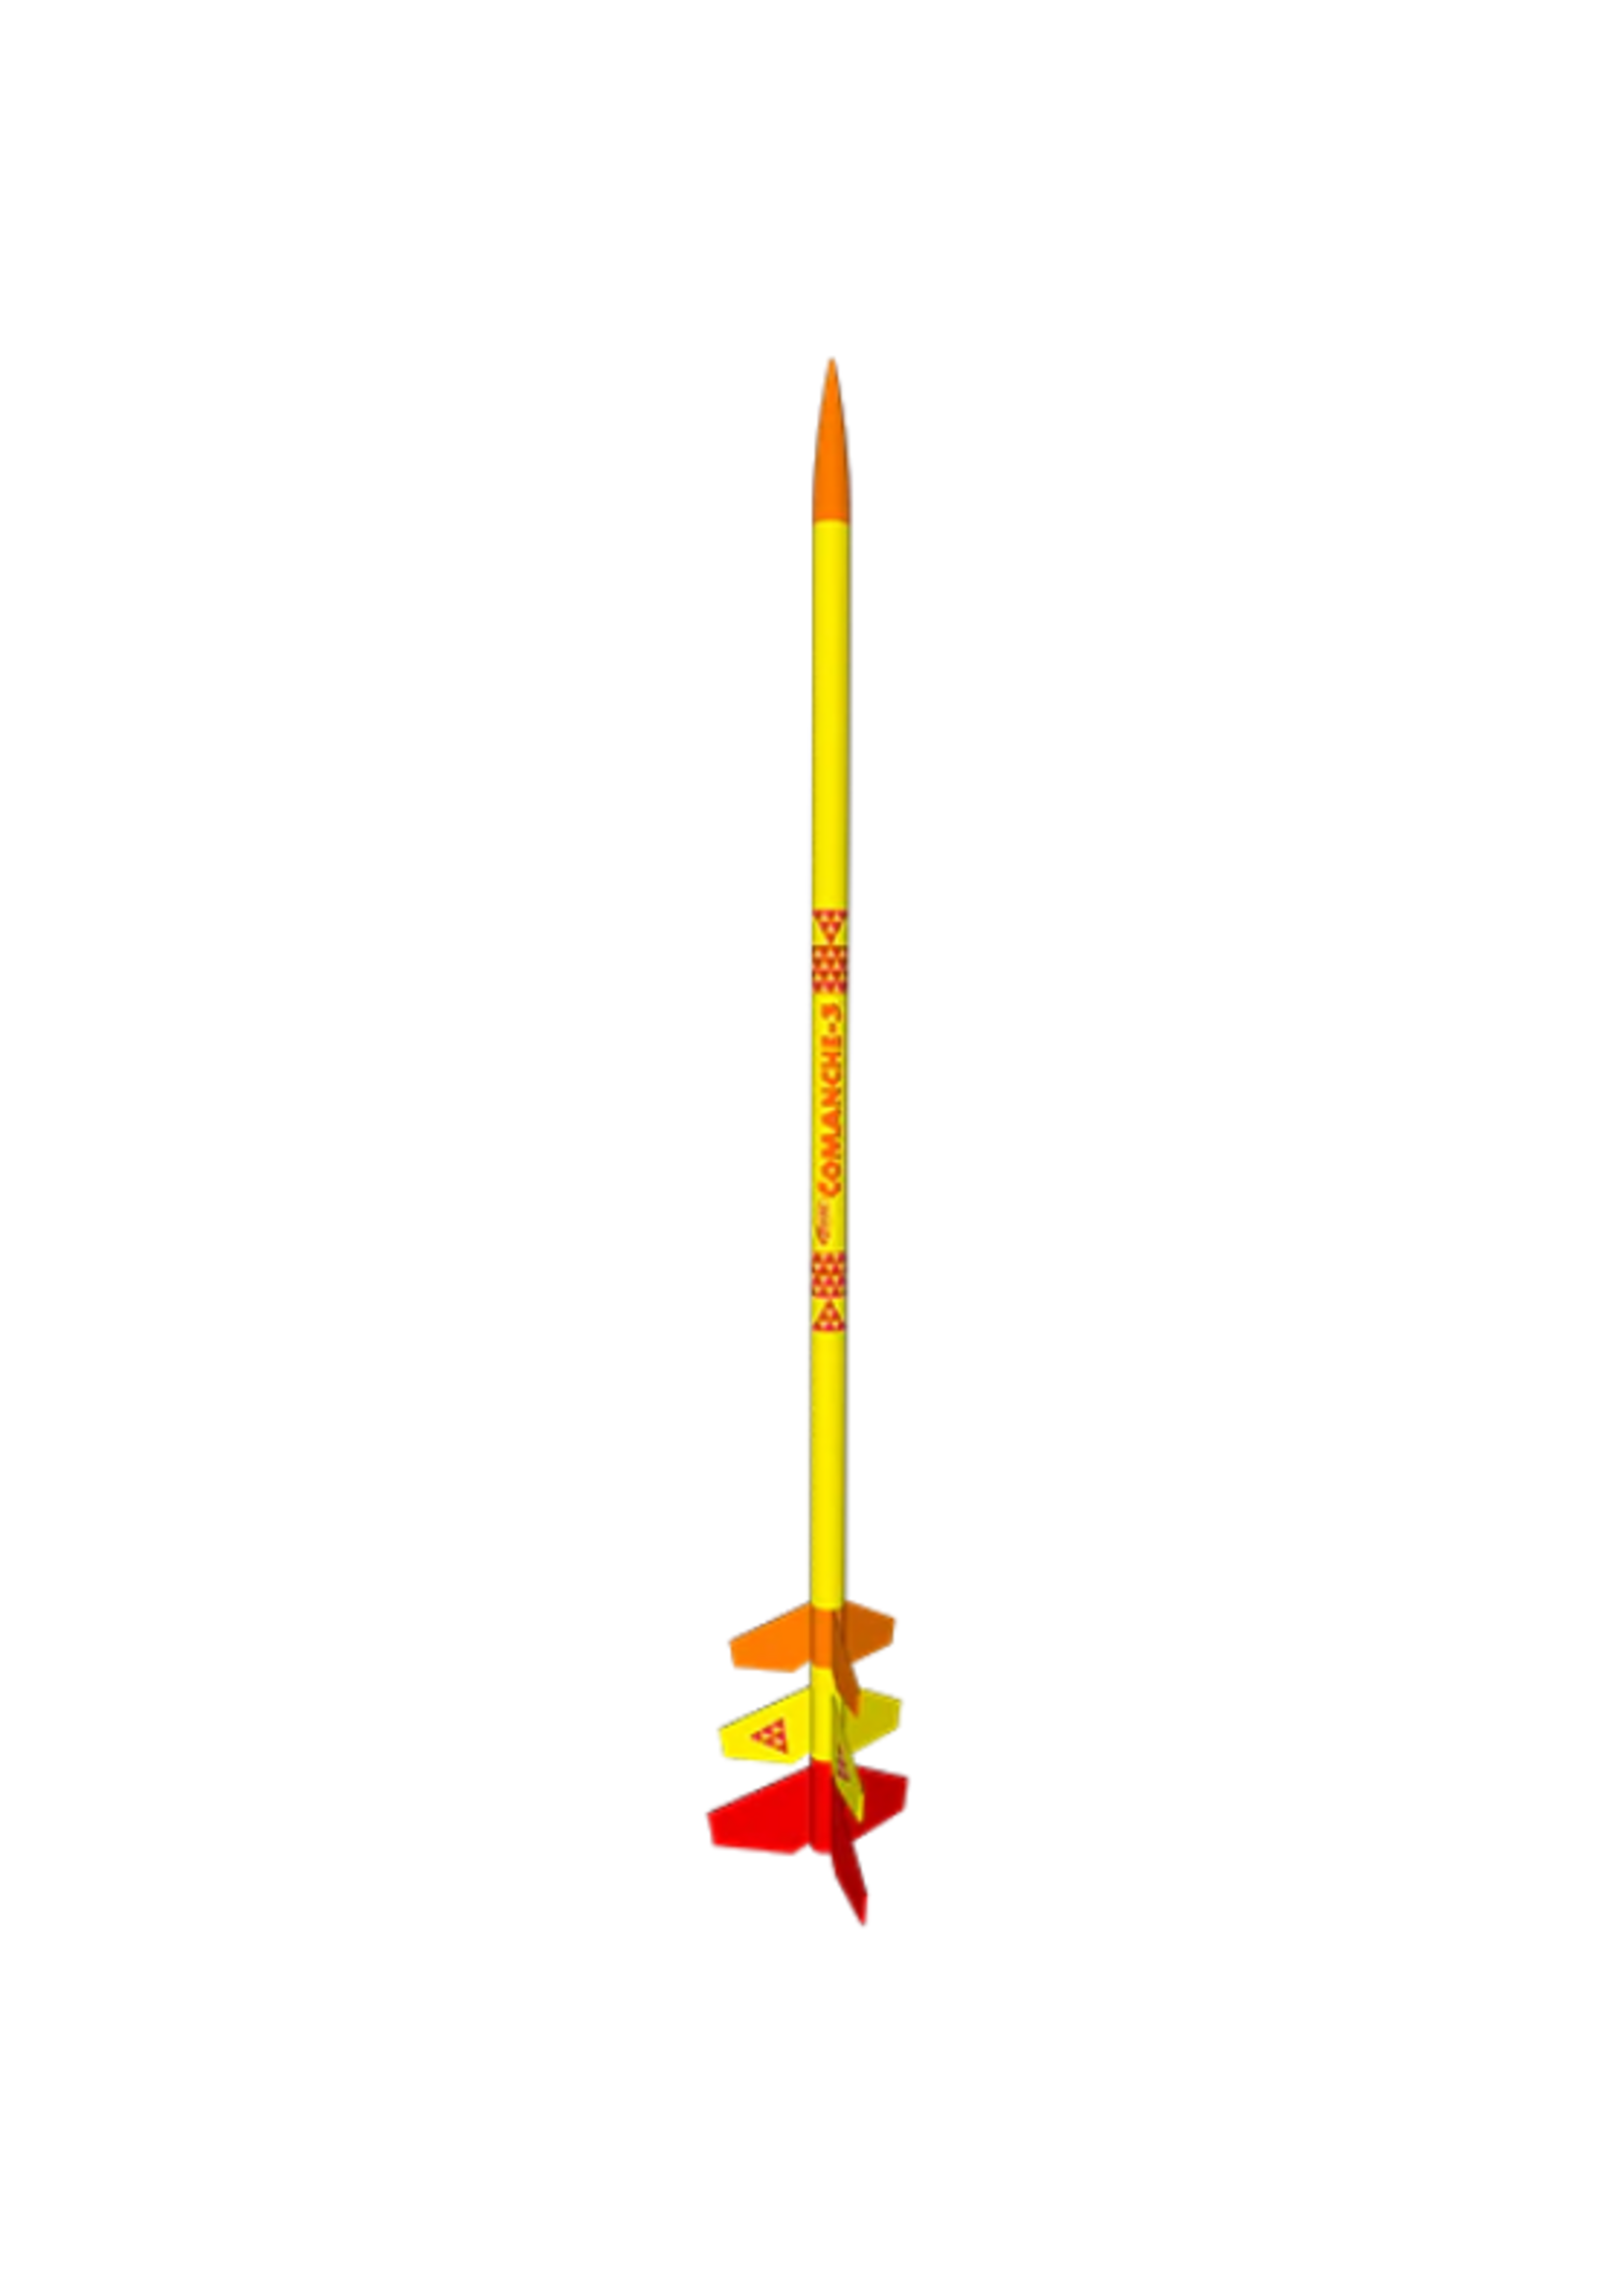 Estes Rockets EST7245 Estes Comanche-3 Model Rocket Kit, Skill Level 3